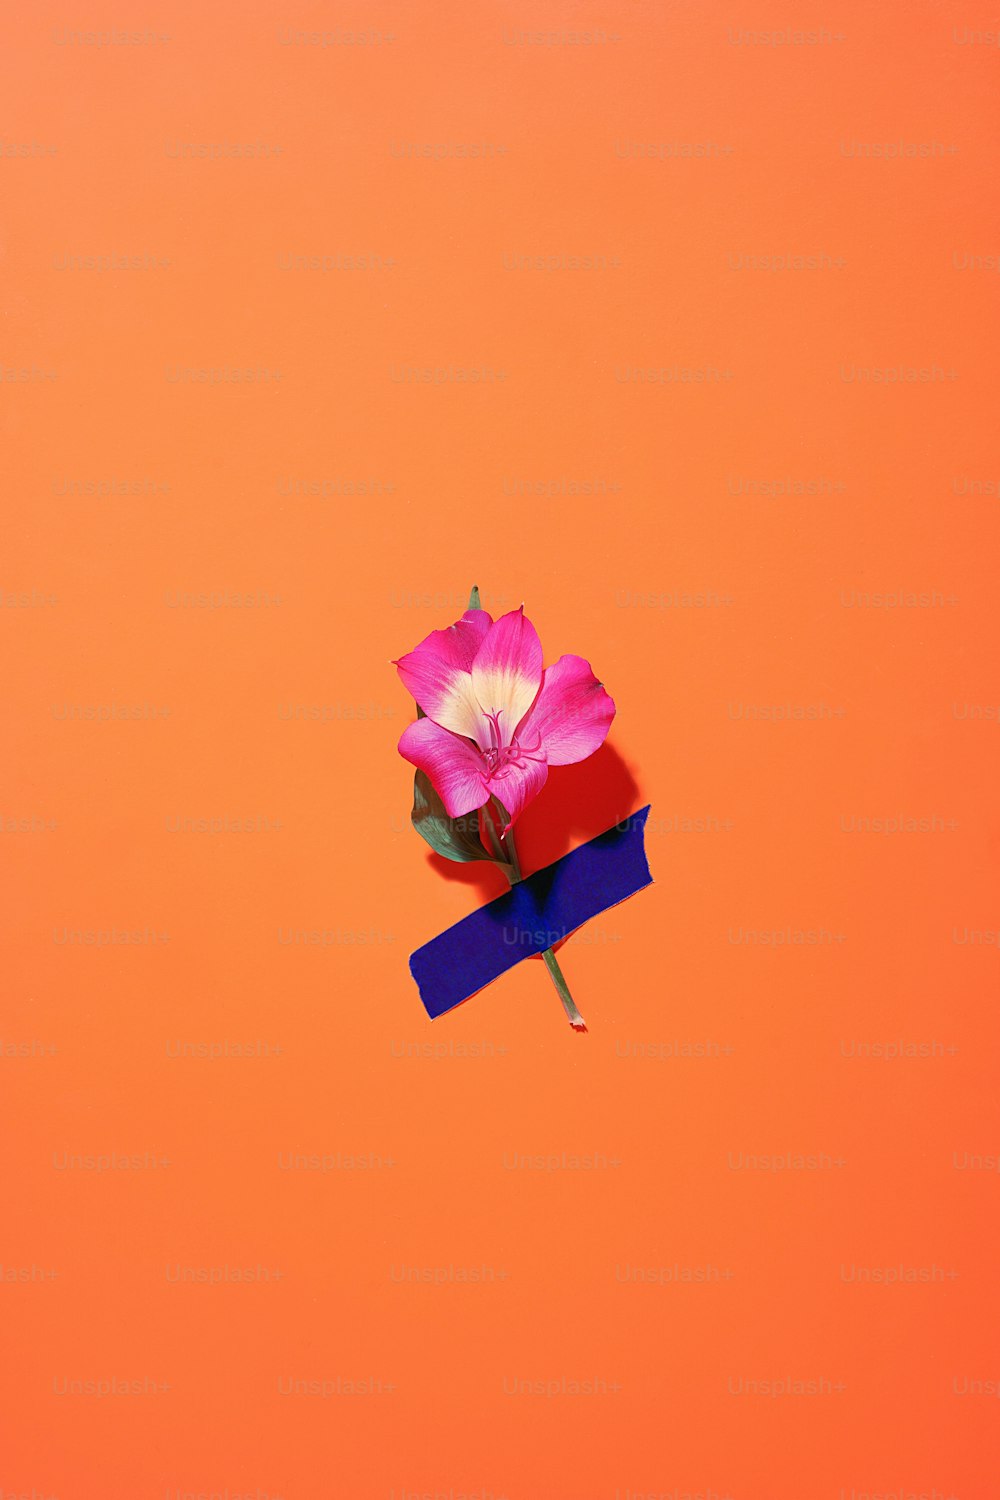 une seule fleur rose au-dessus d’un ruban bleu